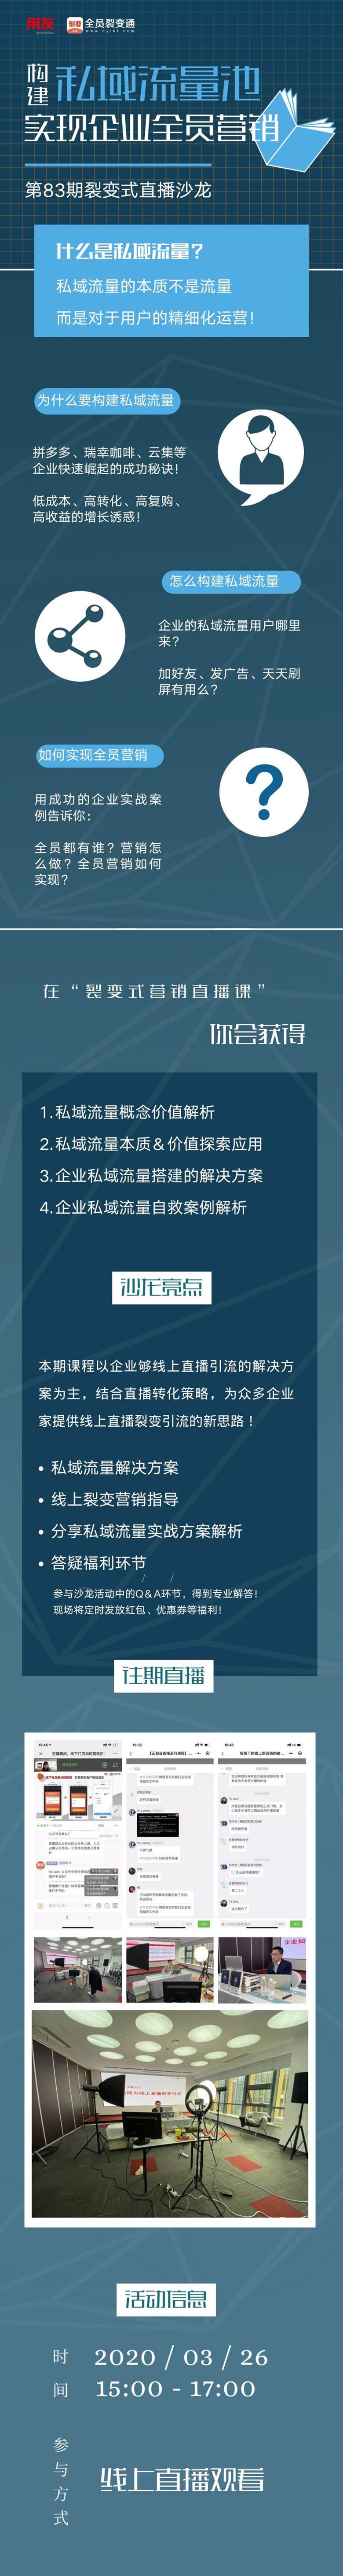 蓝白色书本矢量图现代2020留学择校盛会中文信息图表 的副本 的副本 的副本 副本.png